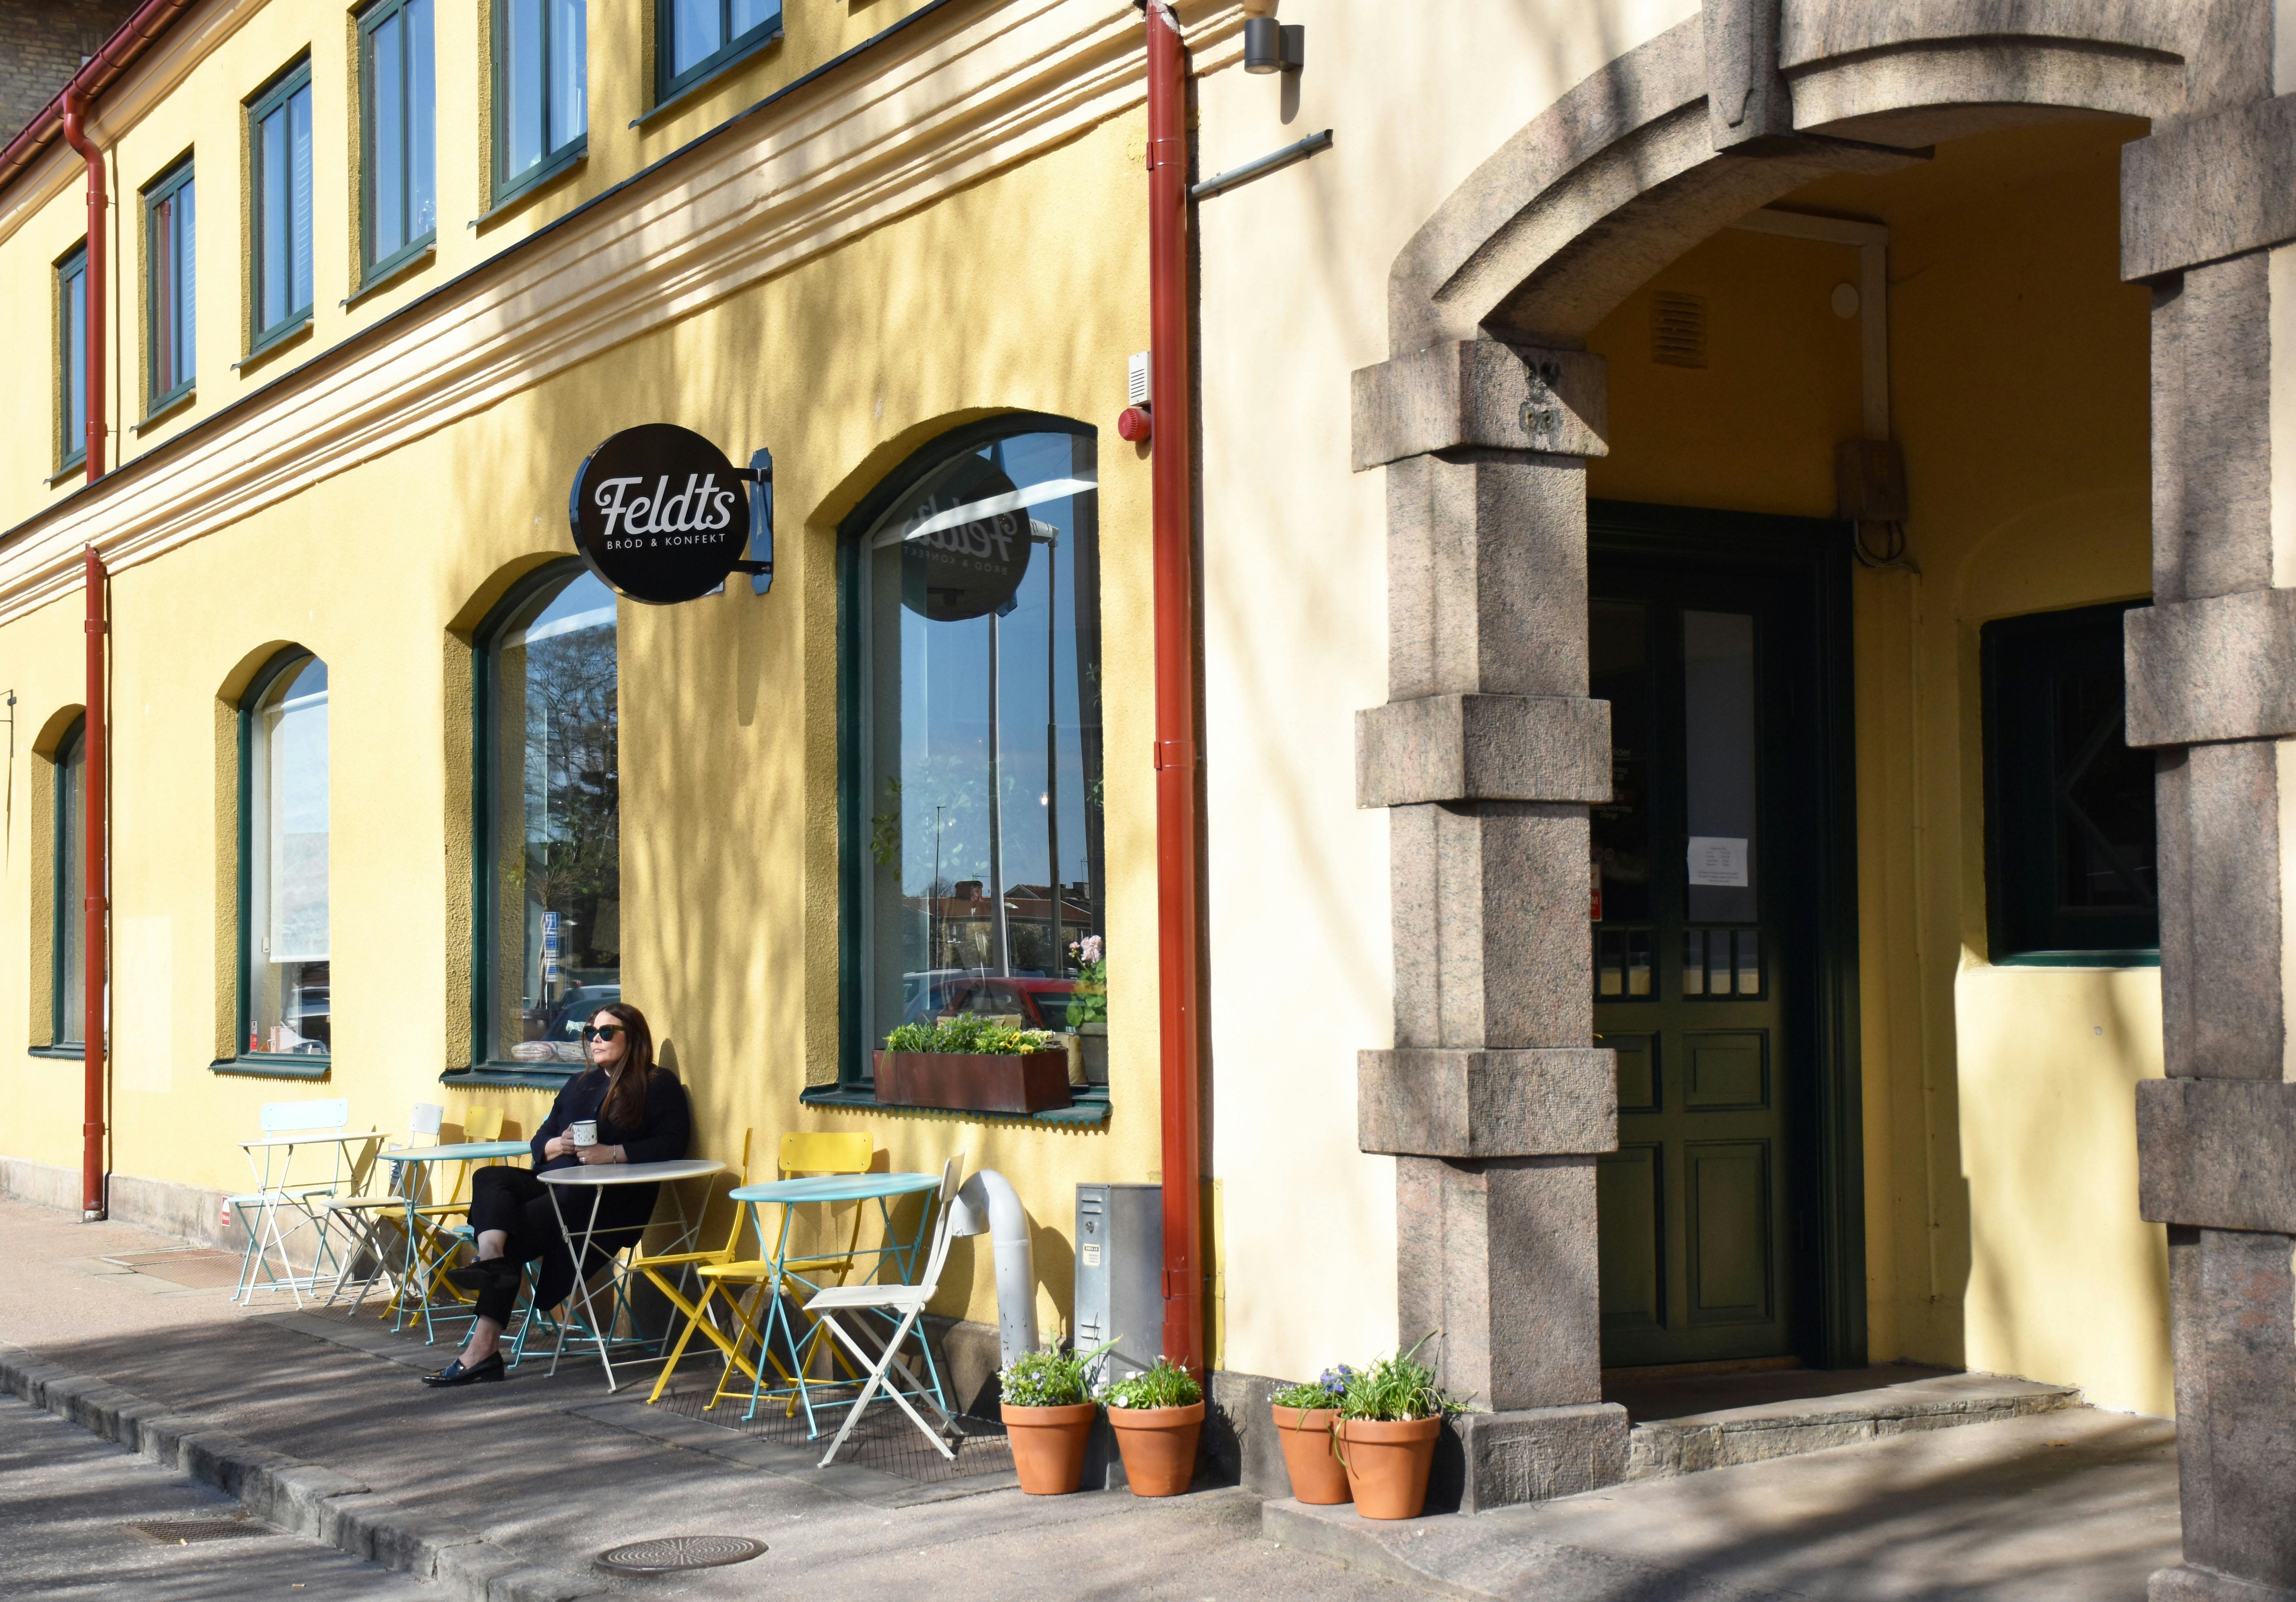 Njut av en kaffe på Feldts bageri i Halmstad